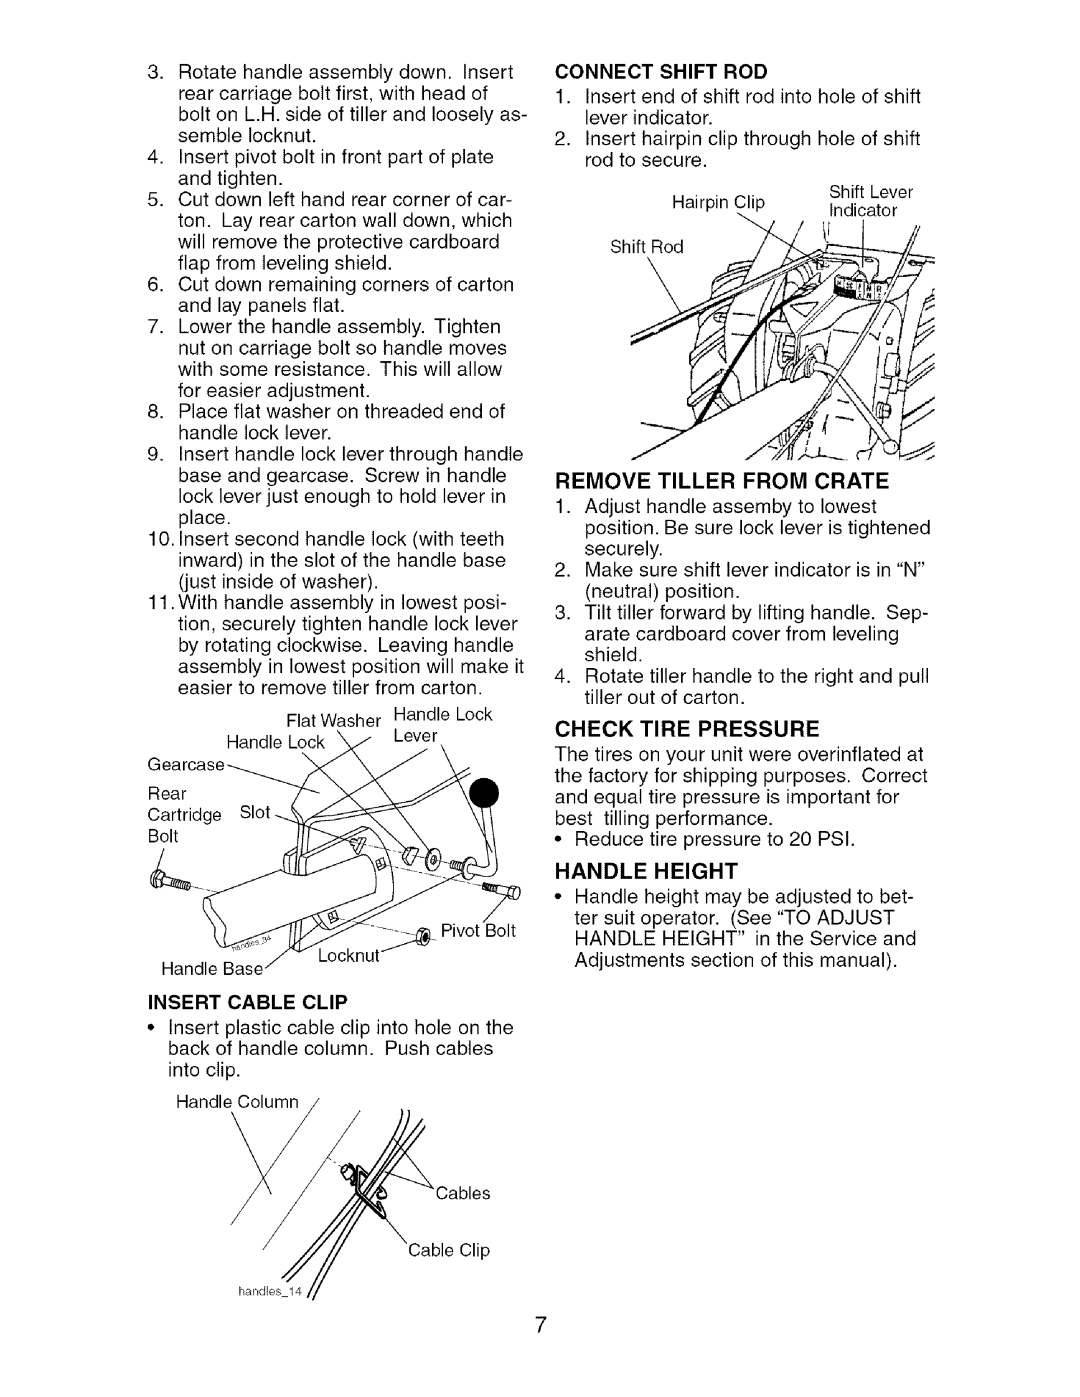 Craftsman 917.29604 owner manual for easier adjustment 